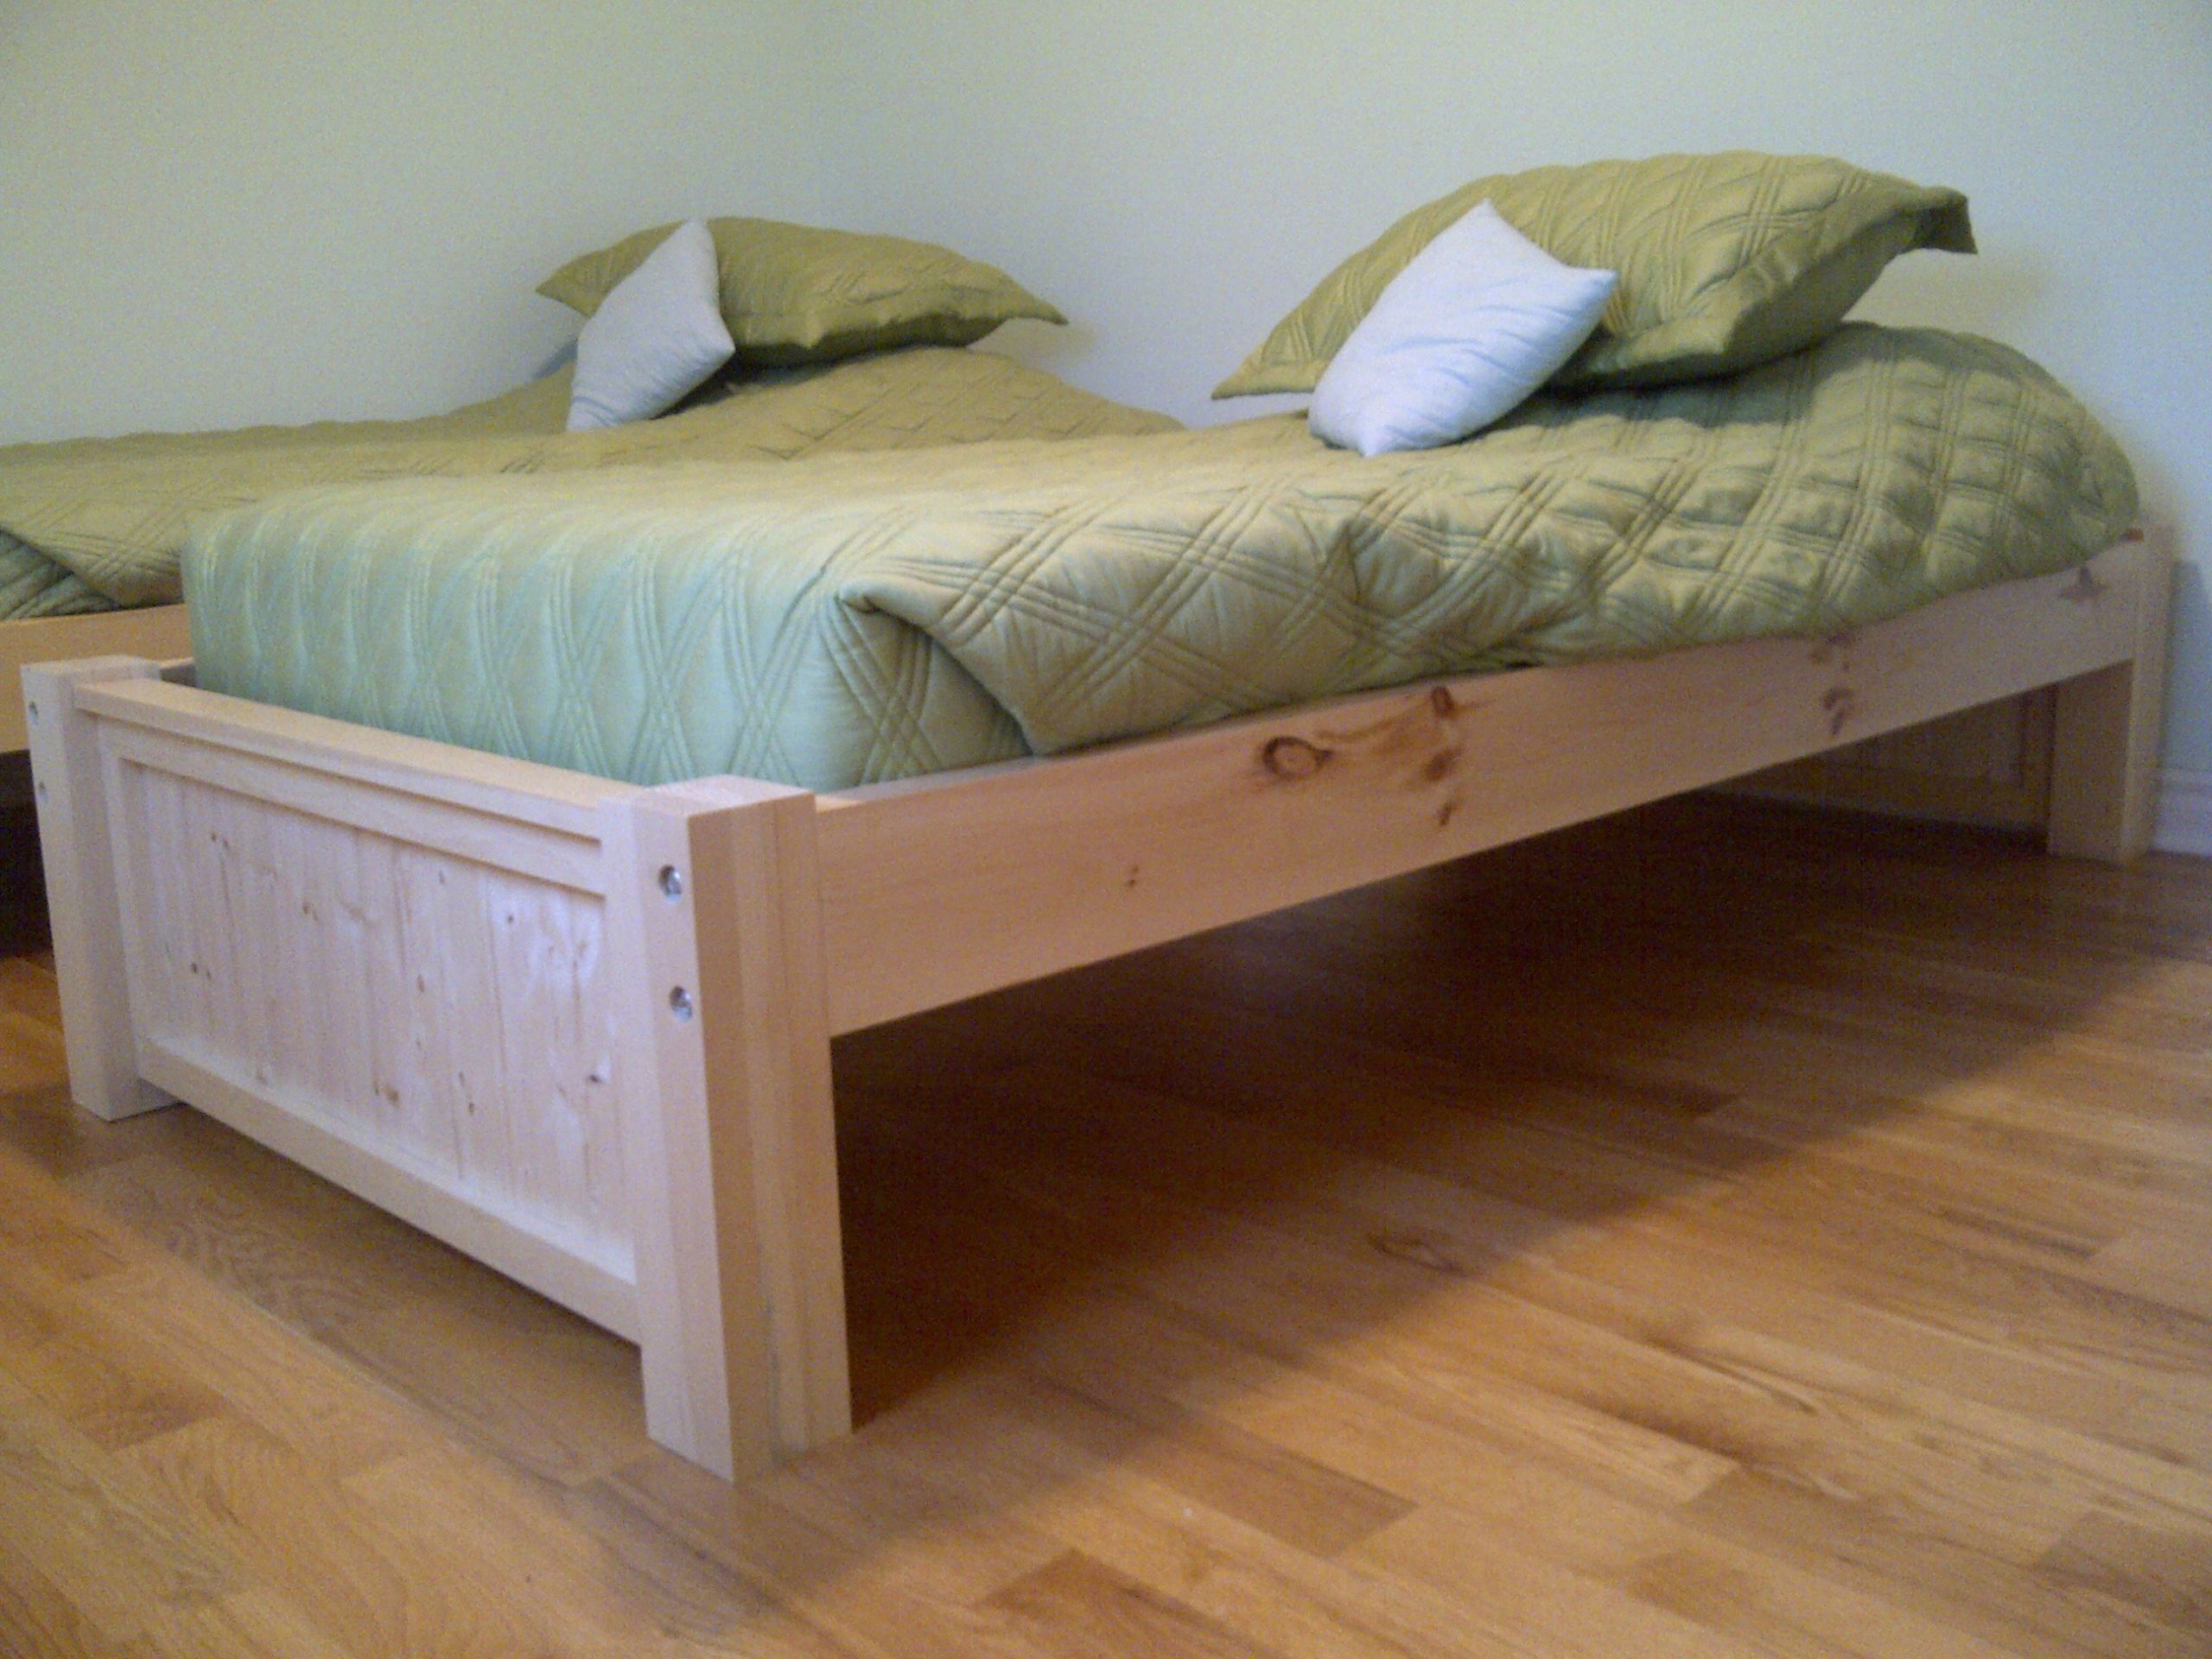 DIY Platform Bed Plans
 Twin Platform Bed Plans – BED PLANS DIY & BLUEPRINTS